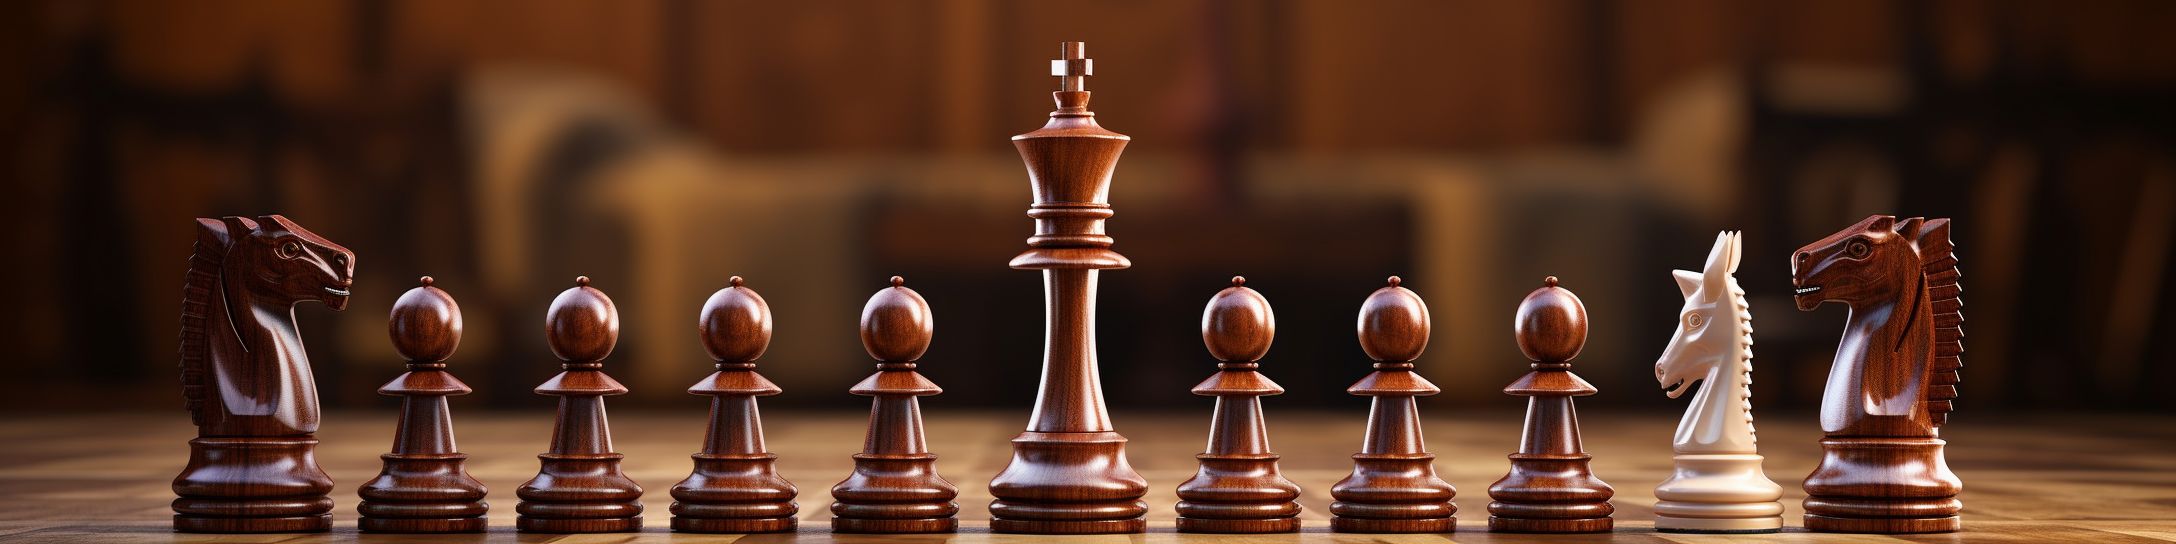 Taille du jeu d'échecs : recommandations pour joueurs avancés